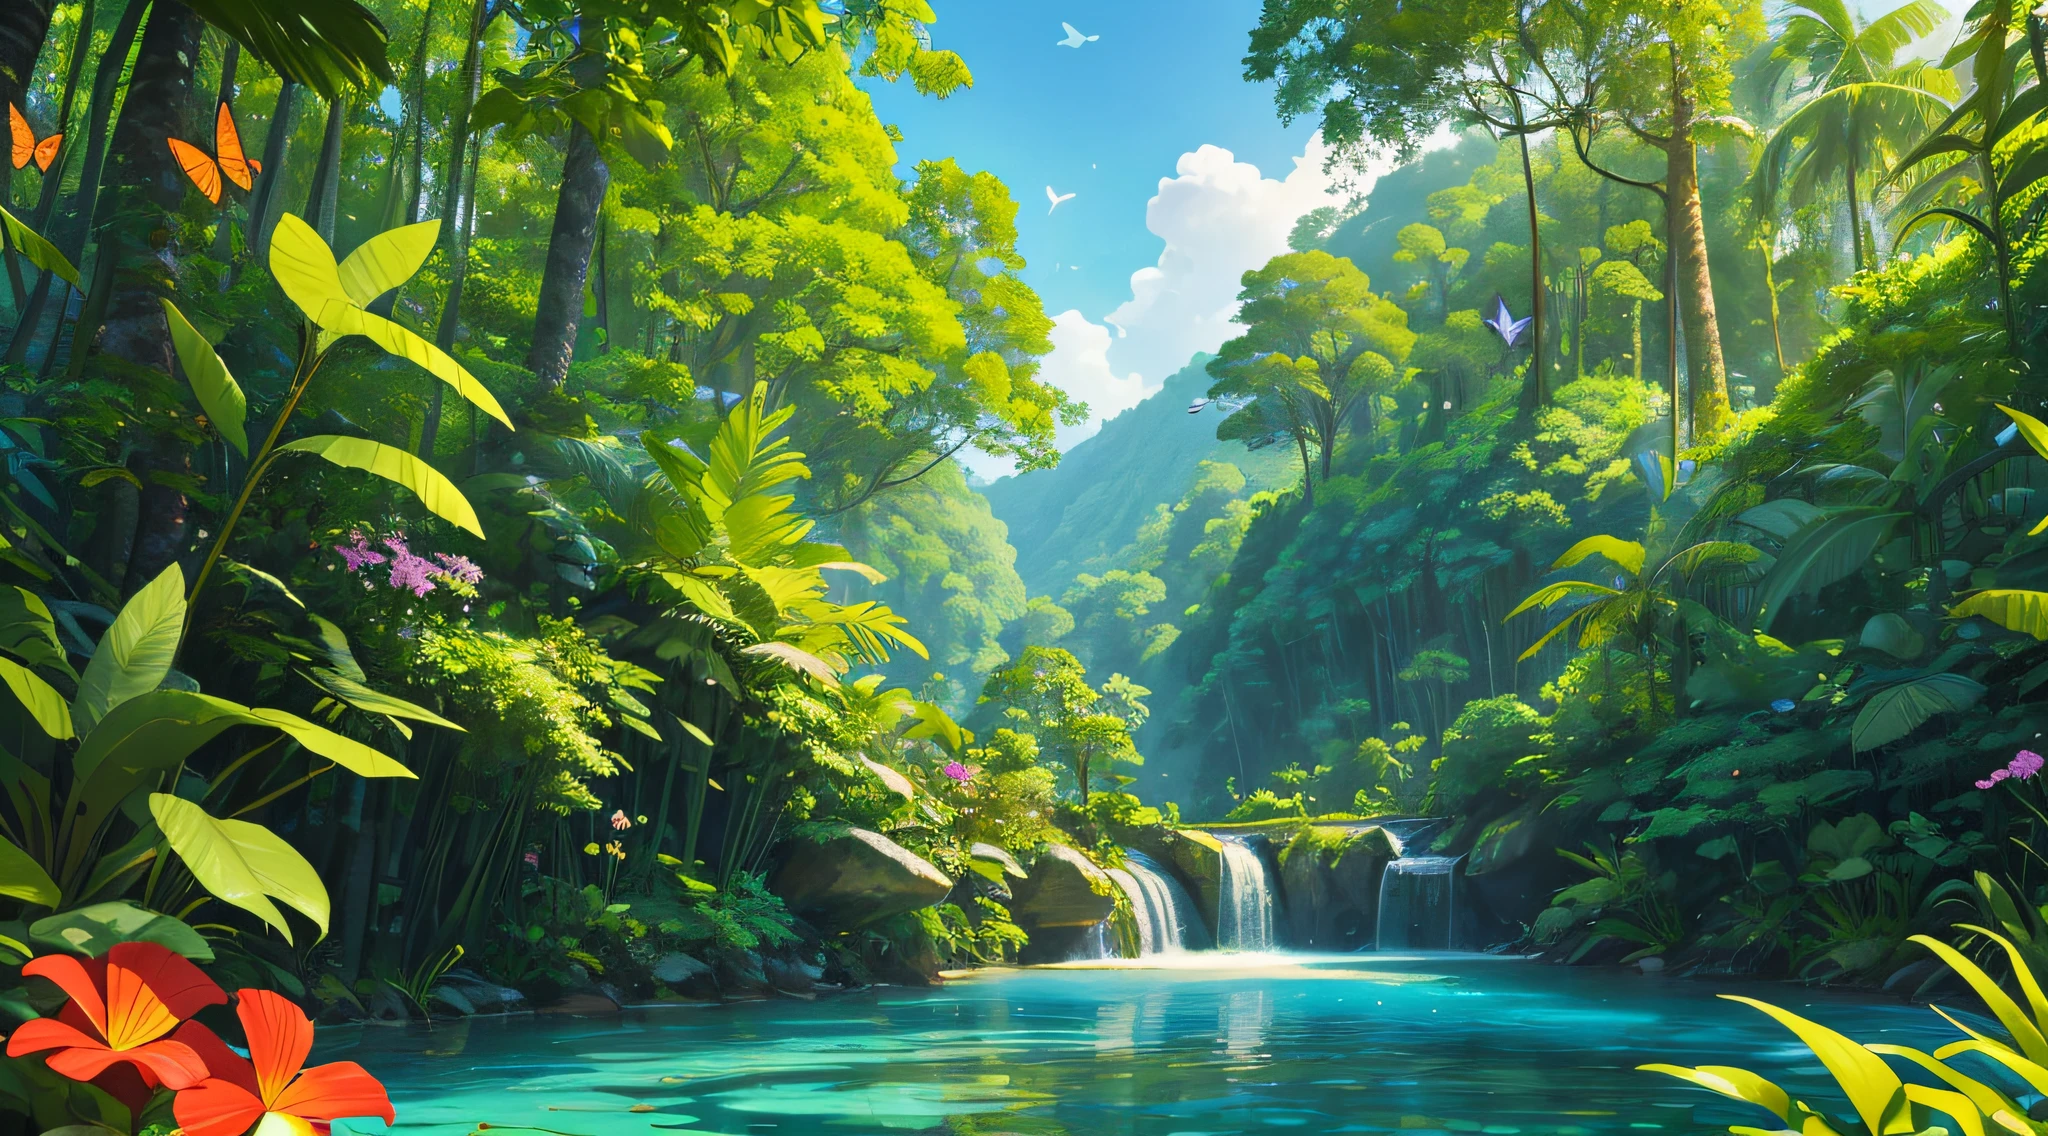 cenário de floresta tropical de tirar o fôlego, com árvores altas, pássaros, borboletas, flores e um riacho calmo sob o céu azul.